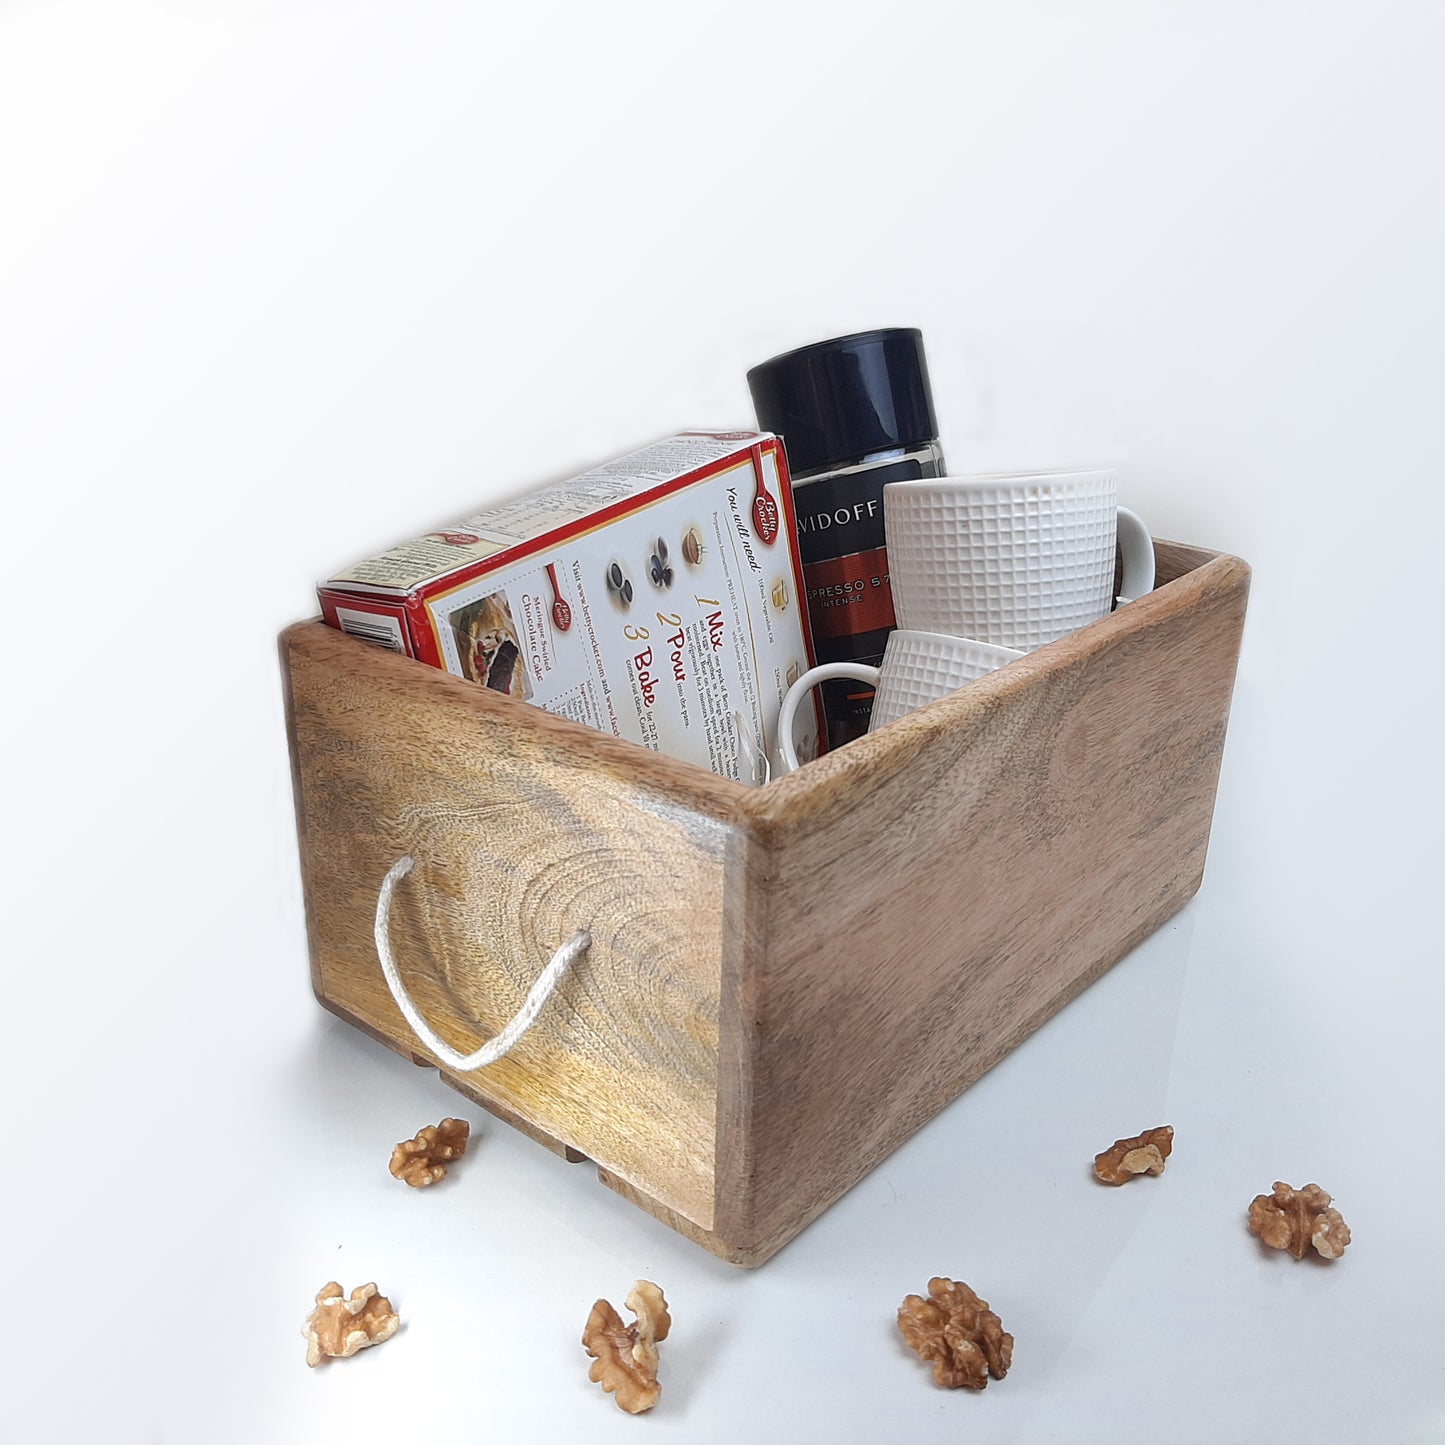 Storage Bin Container Box Wood Kitchen Bathroom Organizer Wooden Holder Rustic